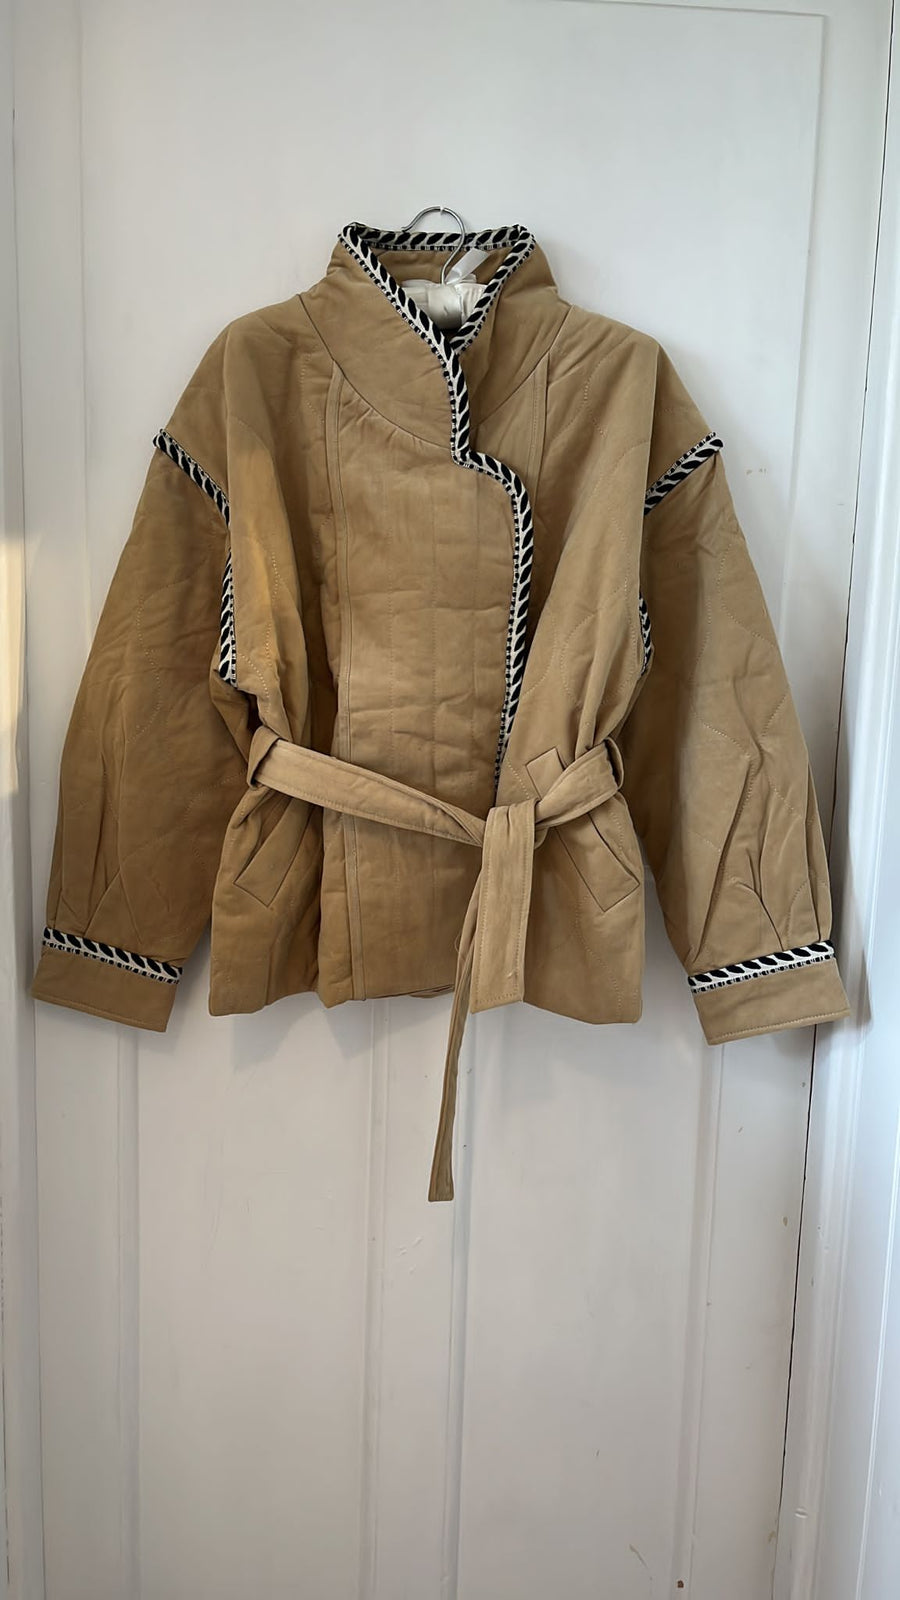 Suncoo Emmy Camel Safari Style Padded Quilted Kimono Jacket Coat Shacket